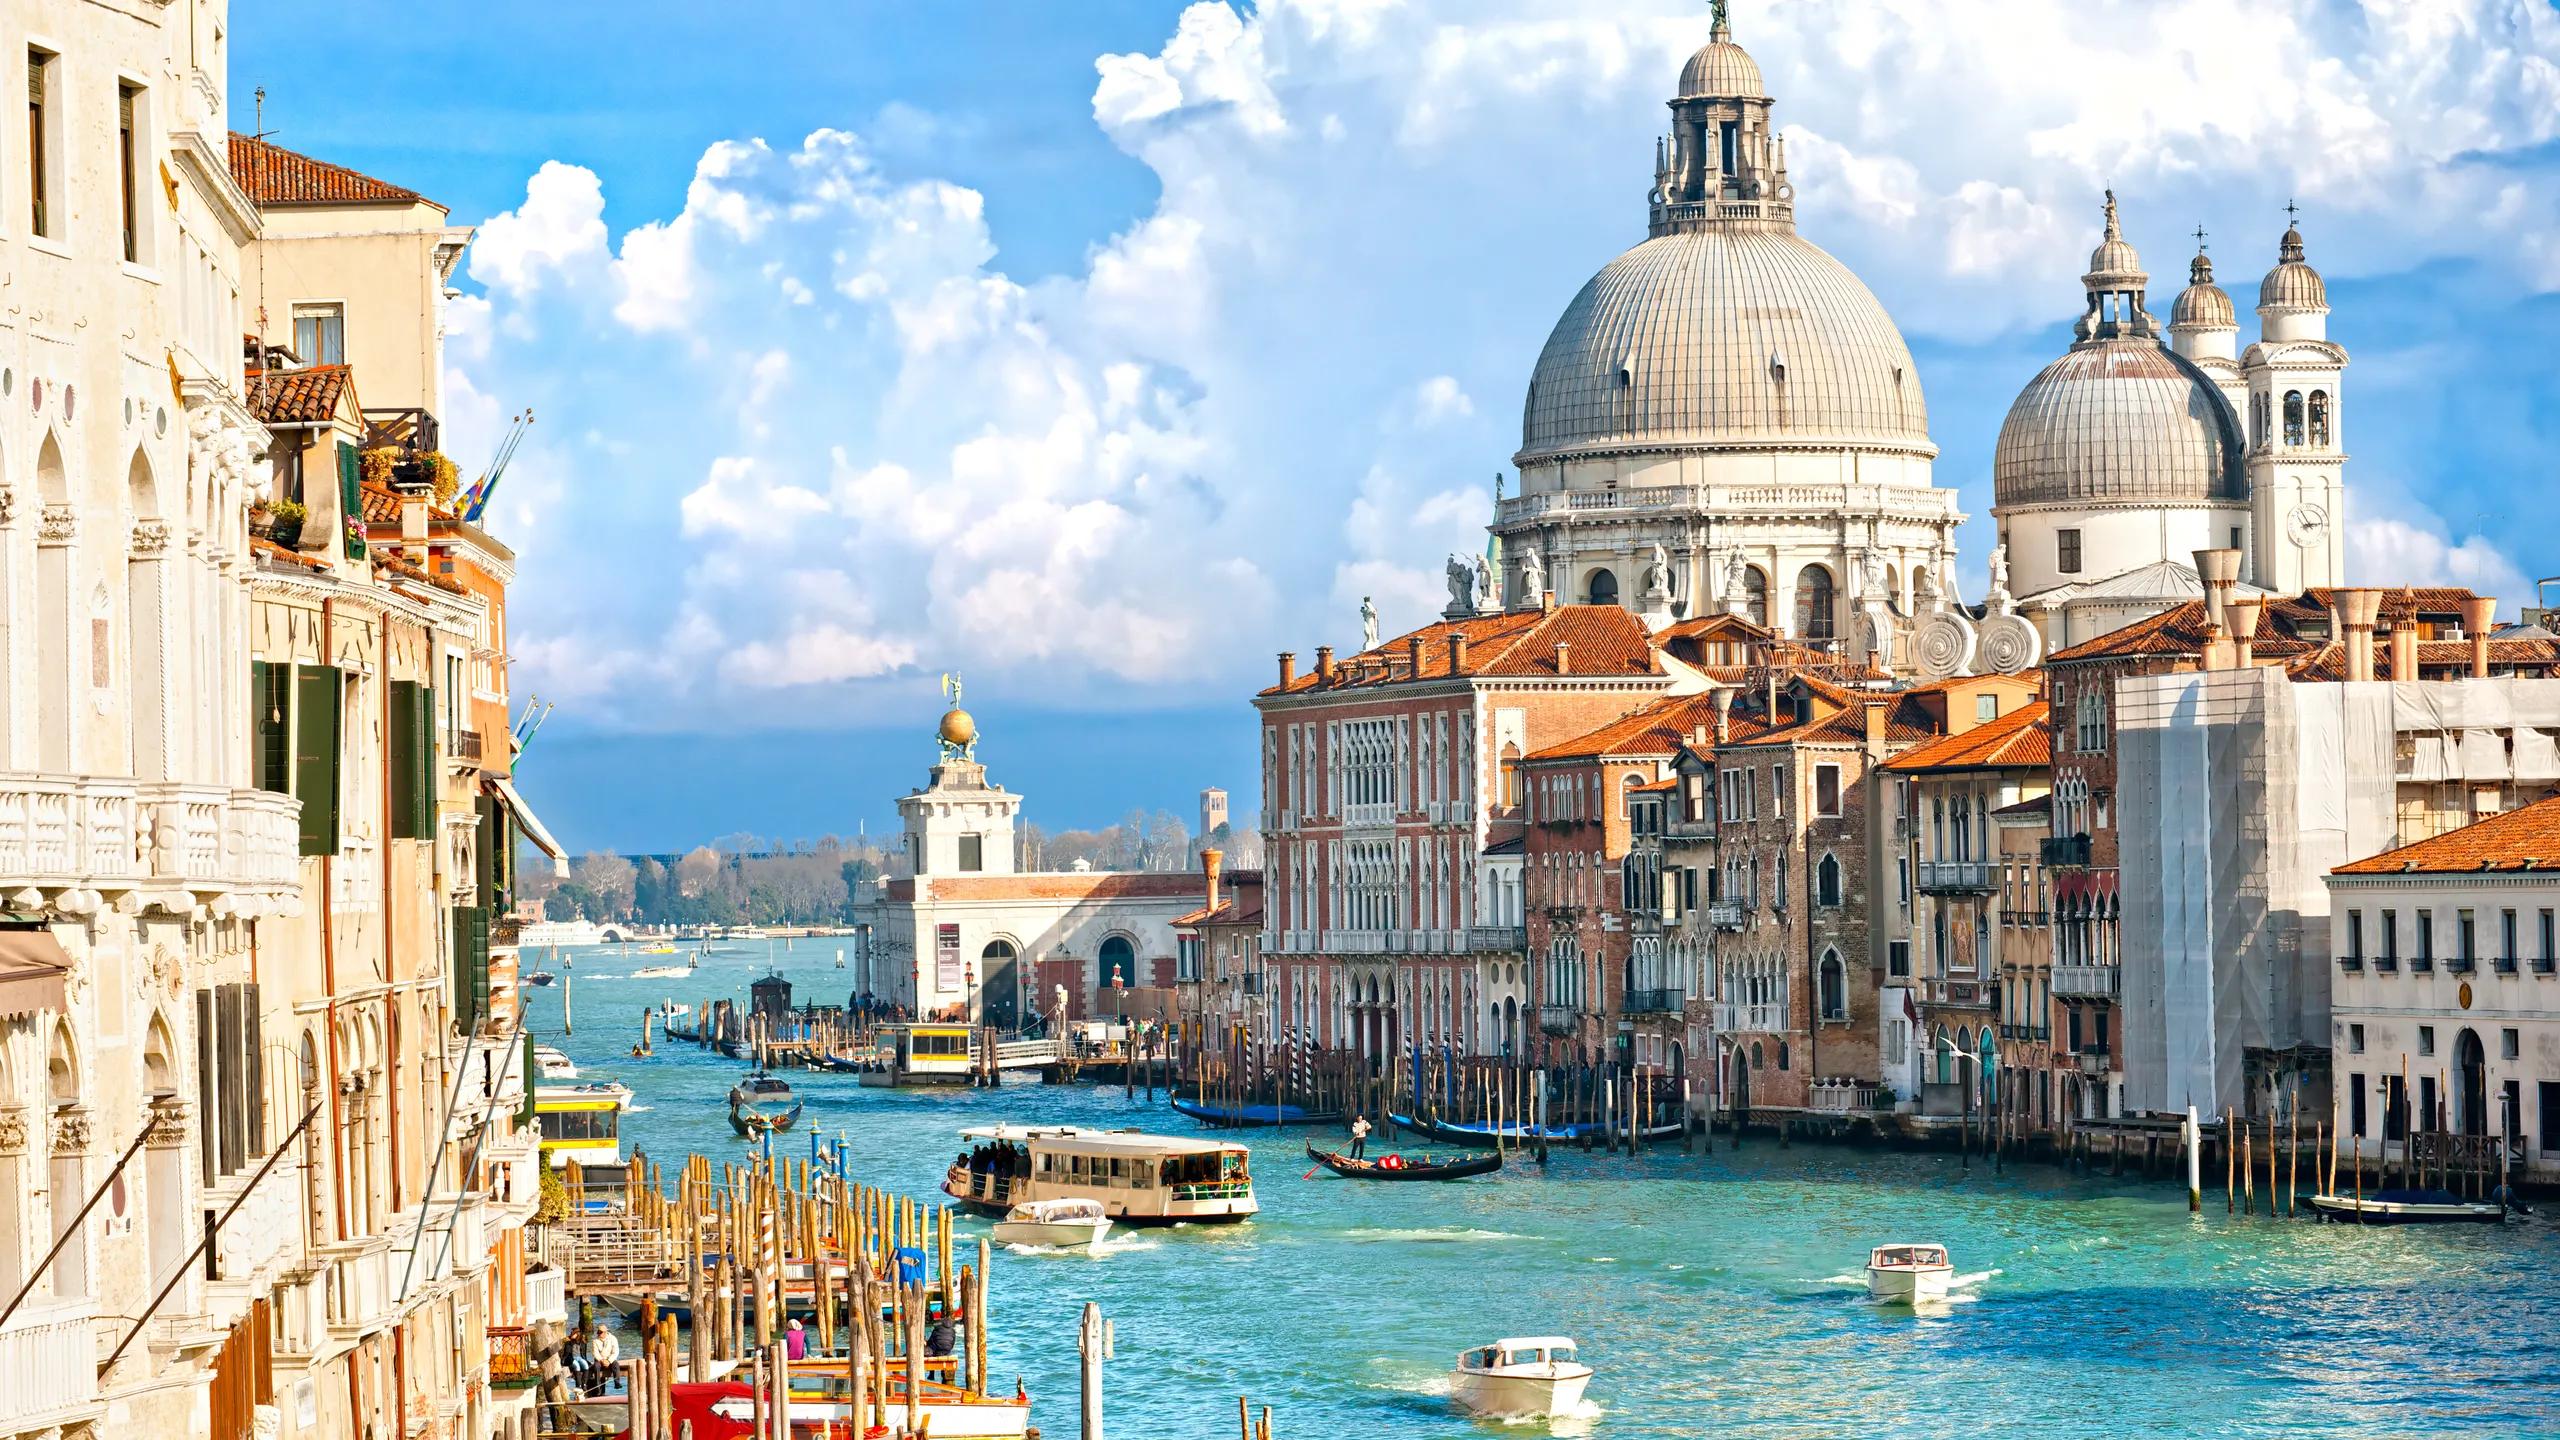 Alessandro Costa: „Najstarsze miasto przyszłości” – zrównoważony rozwój w Wenecji